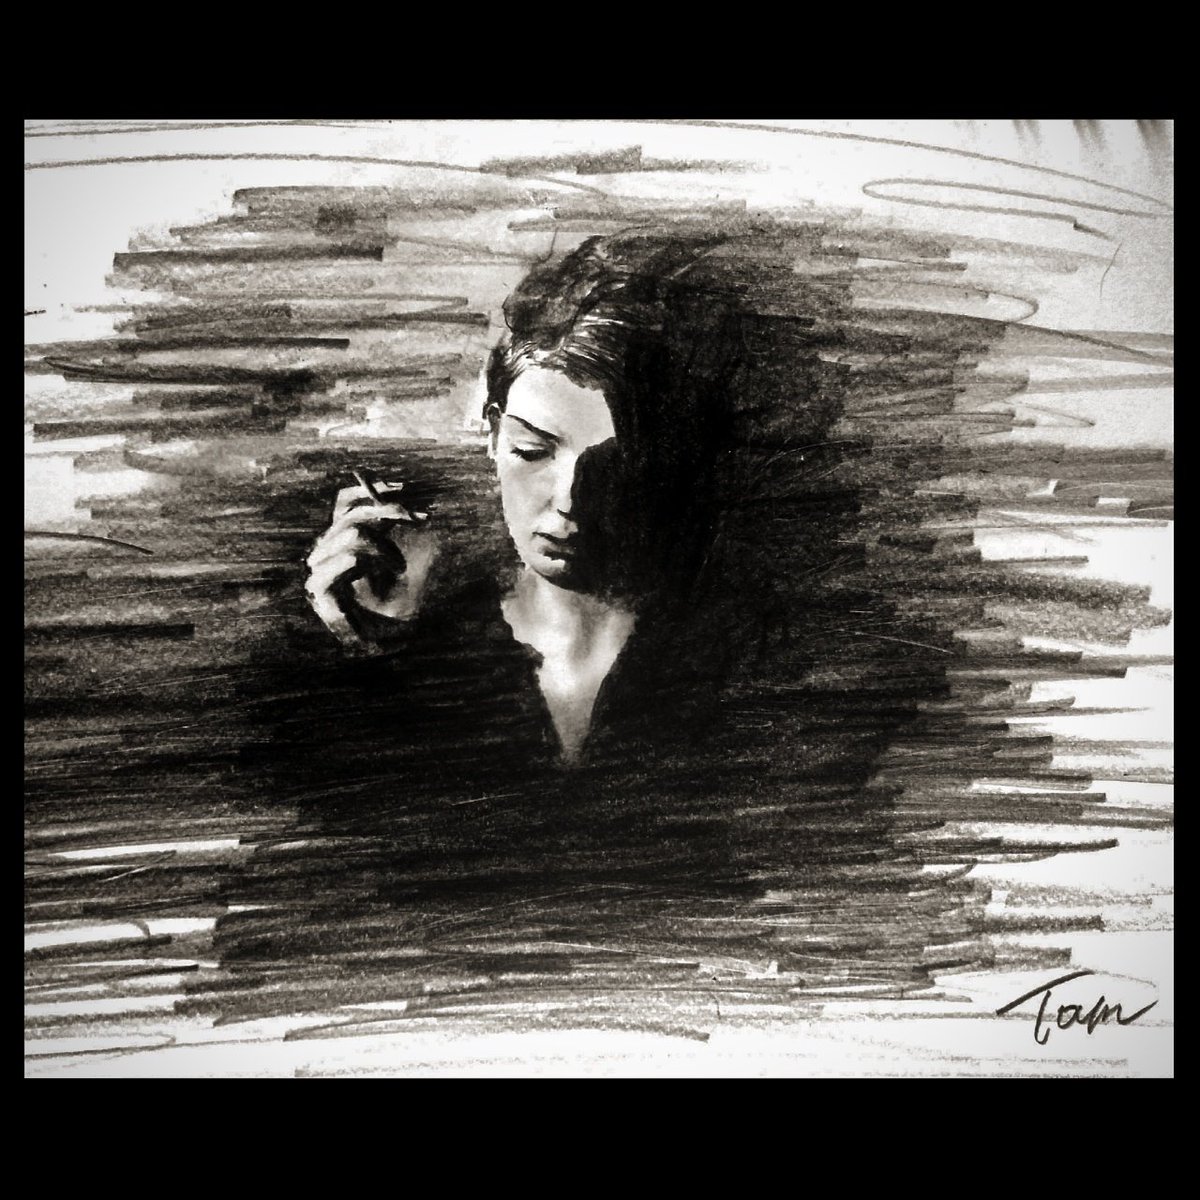 森永製薬の小枝を煙草みたいに持つ小ボケをかましつつも悲しげな女性
#illustration #drowing #smoking #woman #鉛筆画 #イラスト #人物画  #pen 